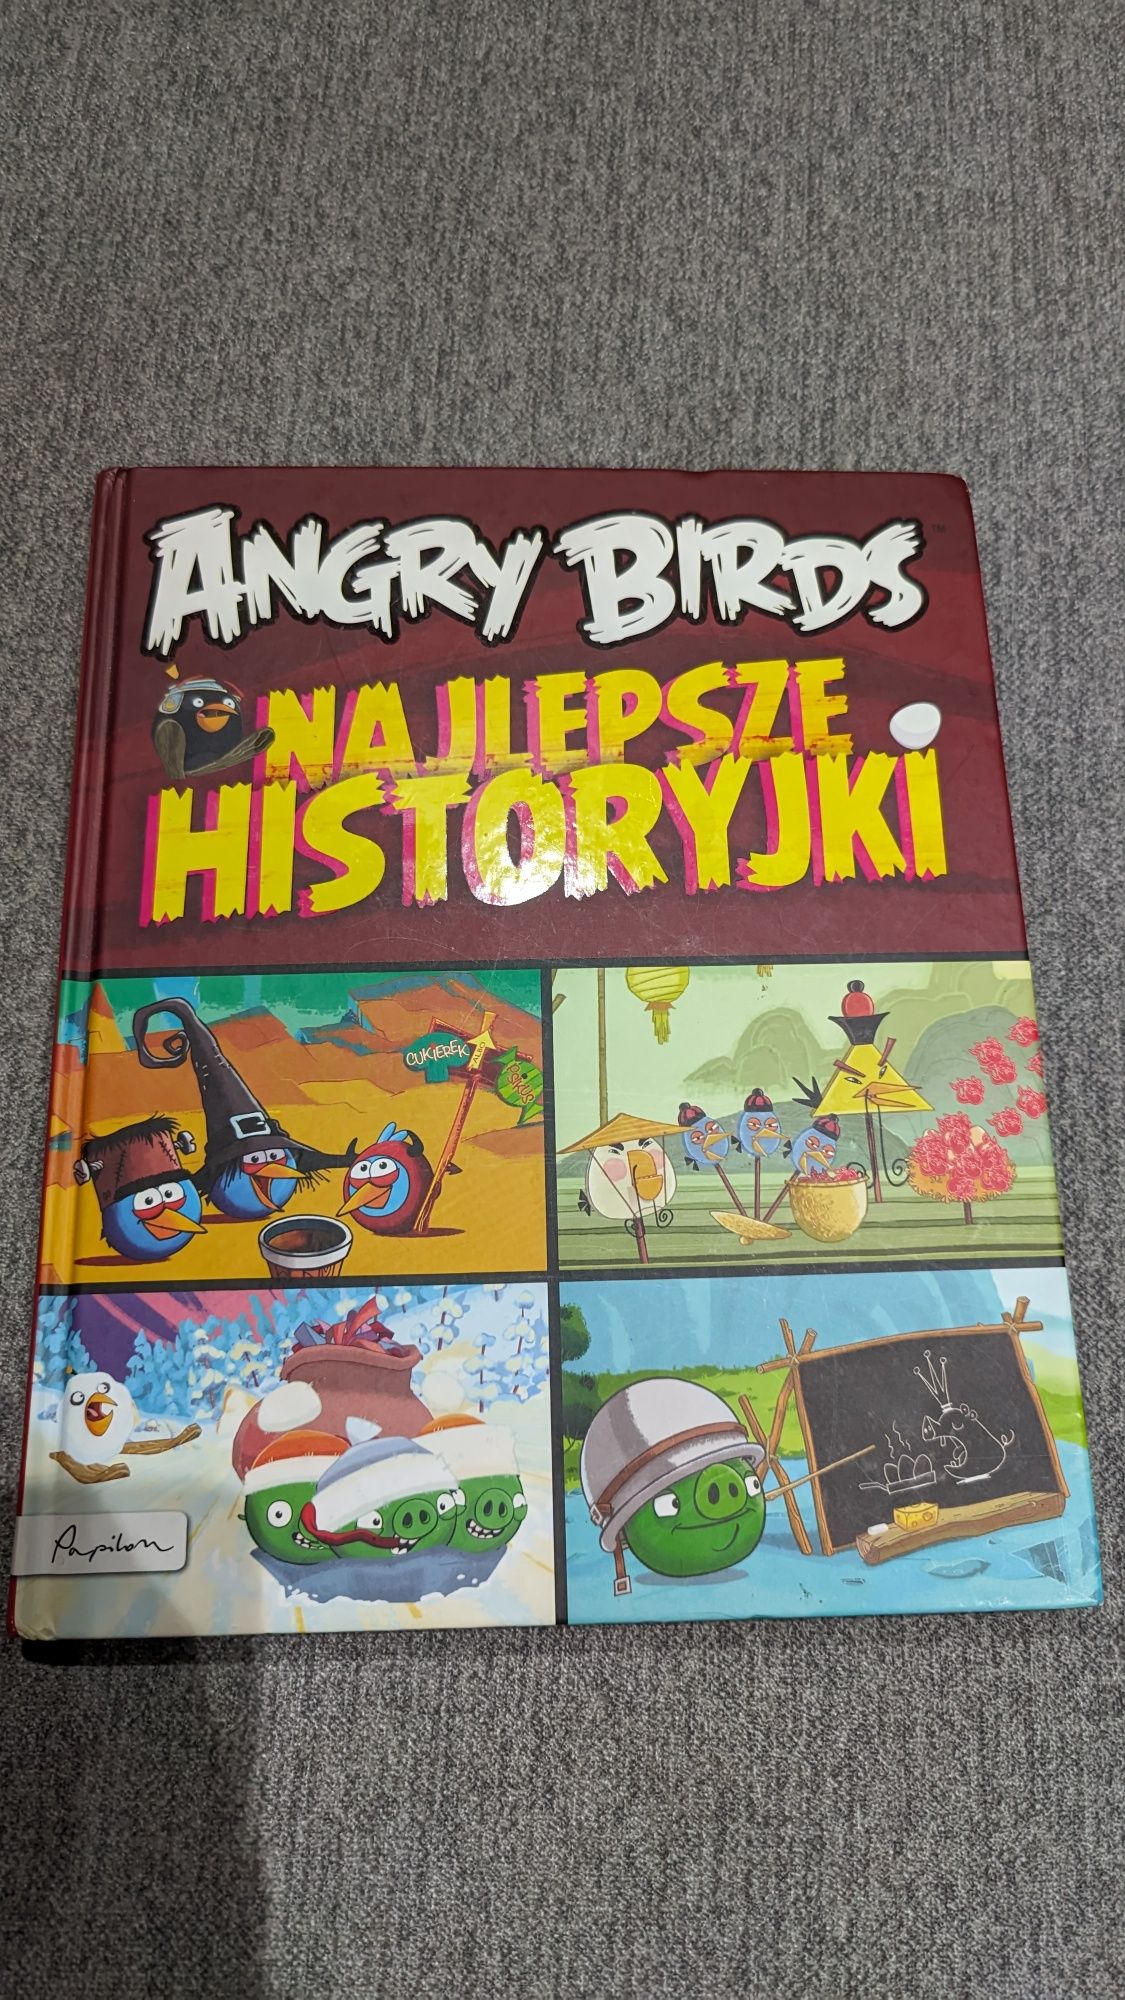 A gry Birds Najlepsze Historyjki